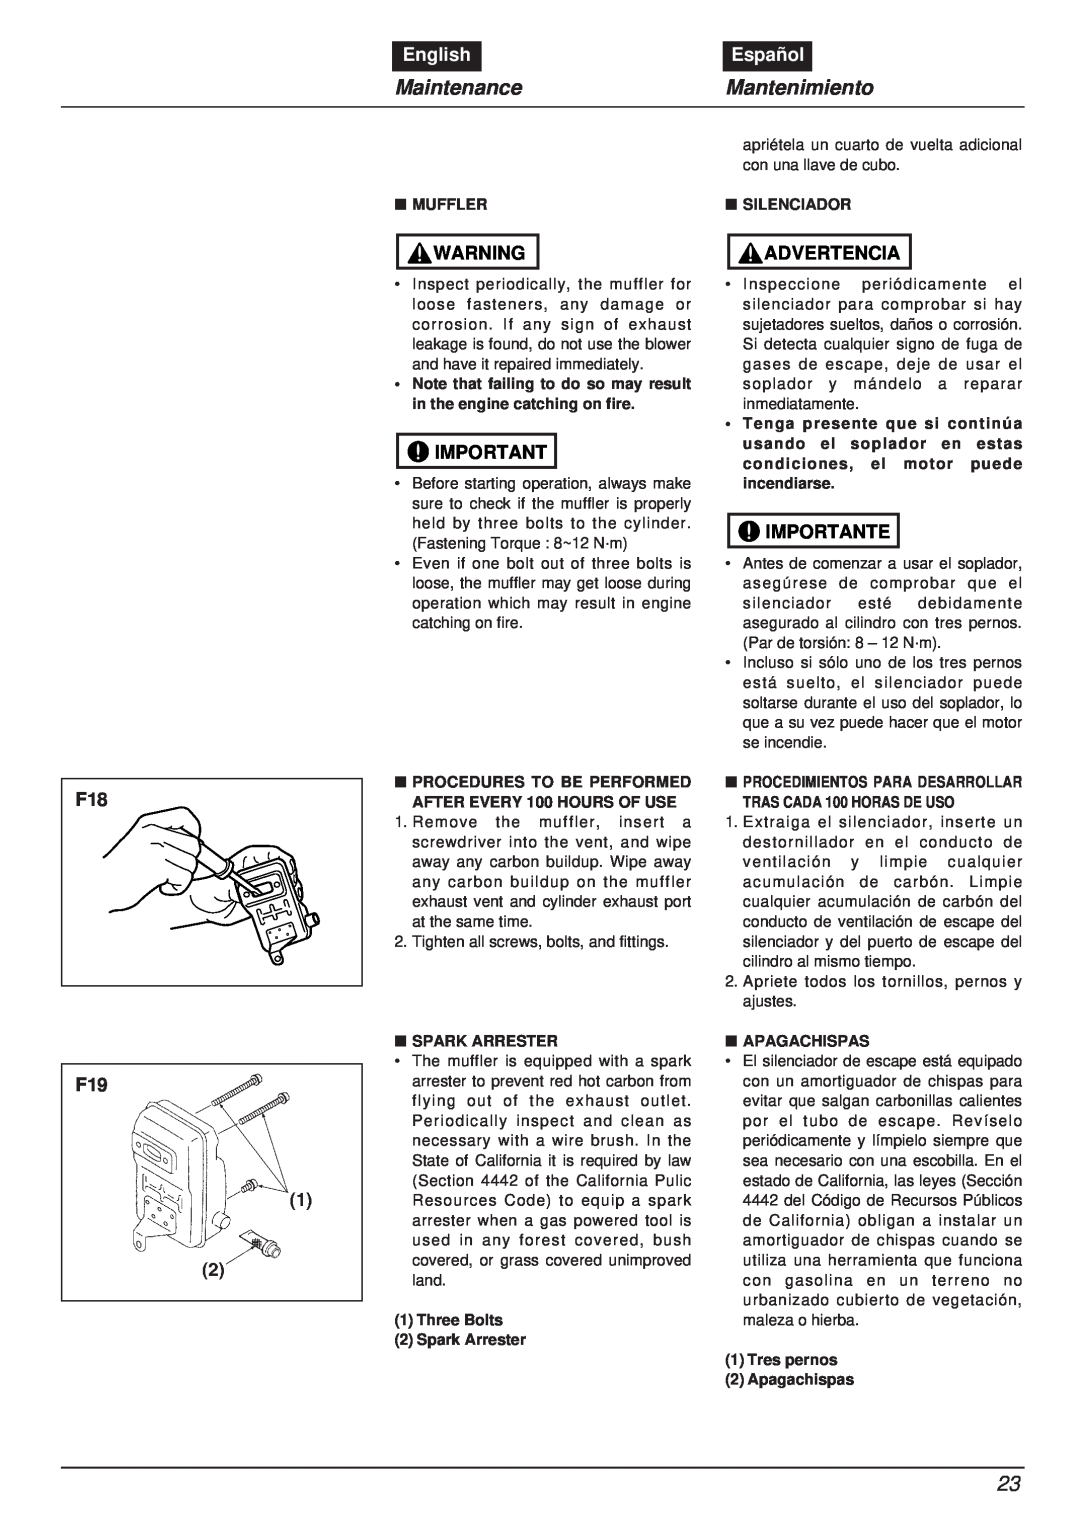 RedMax EBZ8000RH manual MaintenanceMantenimiento, English, Español, Advertencia, Importante 